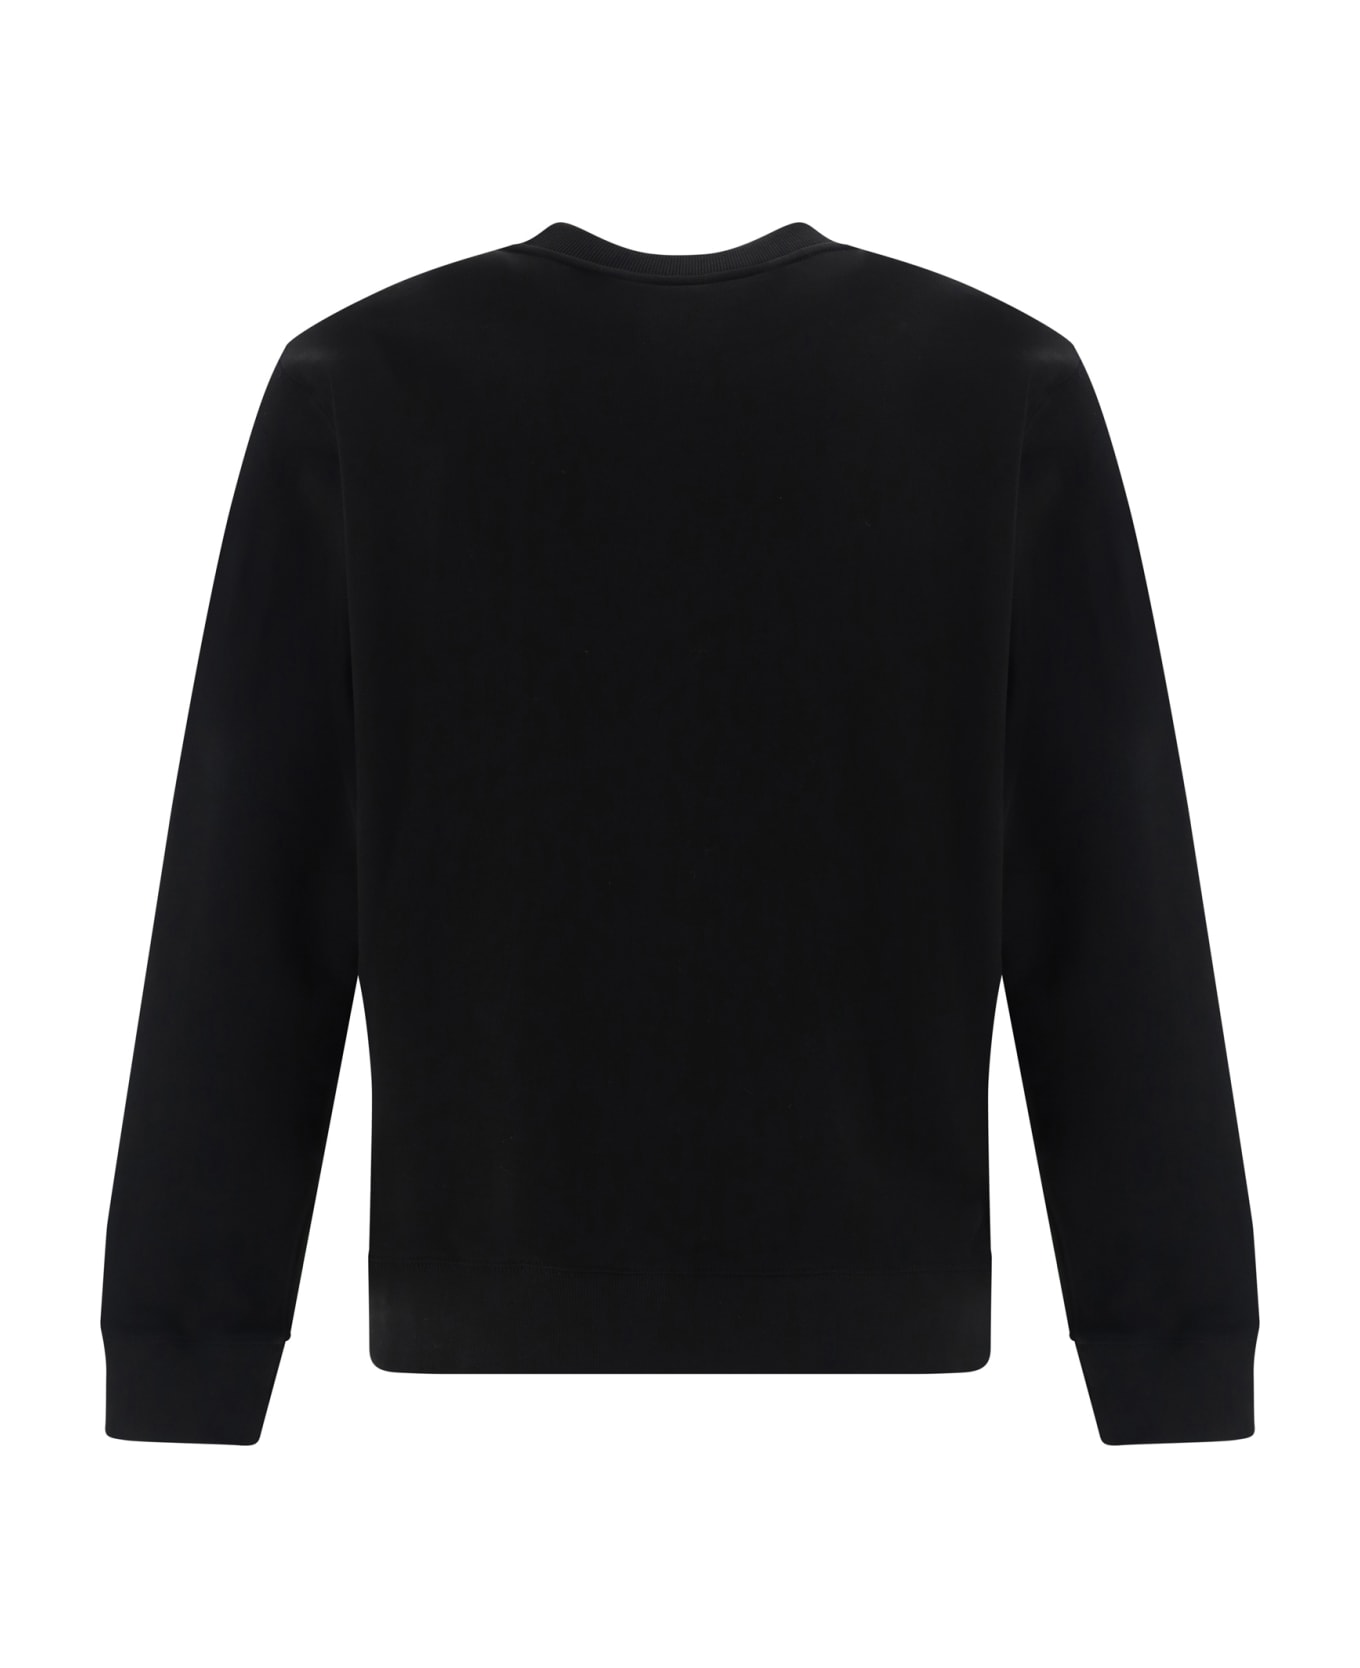 Kenzo Sweatshirt - Black